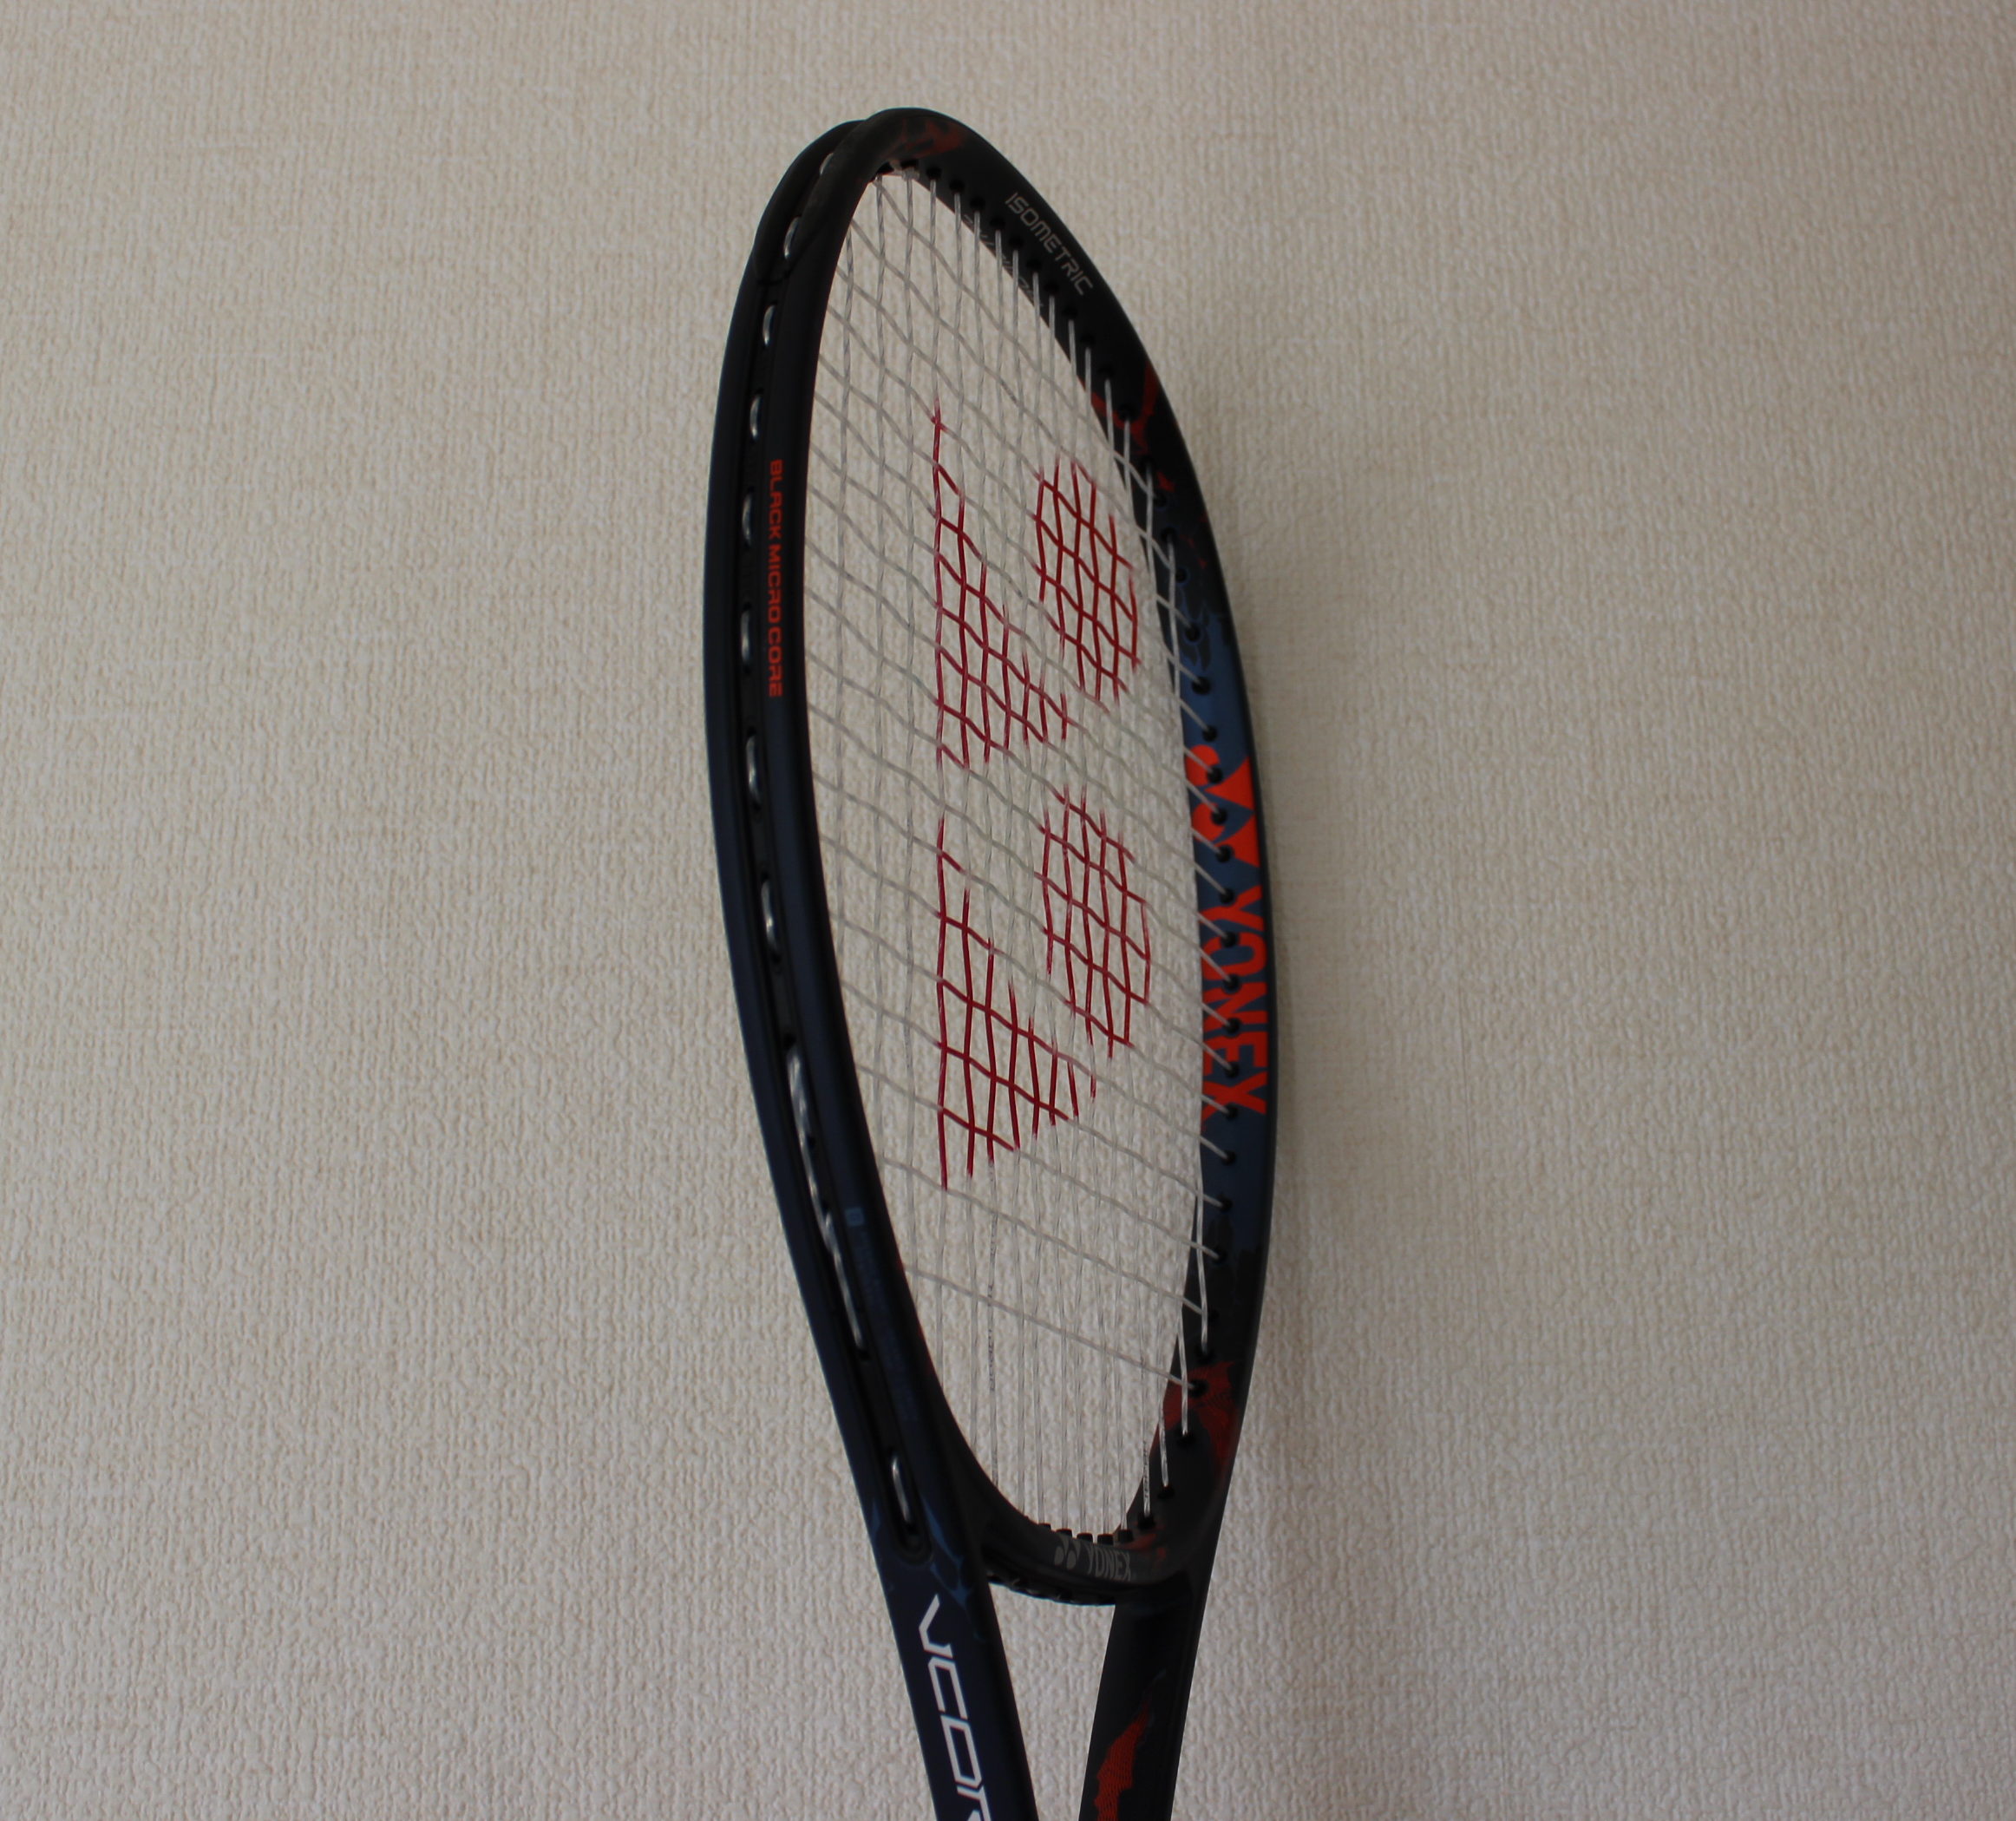 10360円 華麗 専用YONEX テニスラケット VCOREpro97